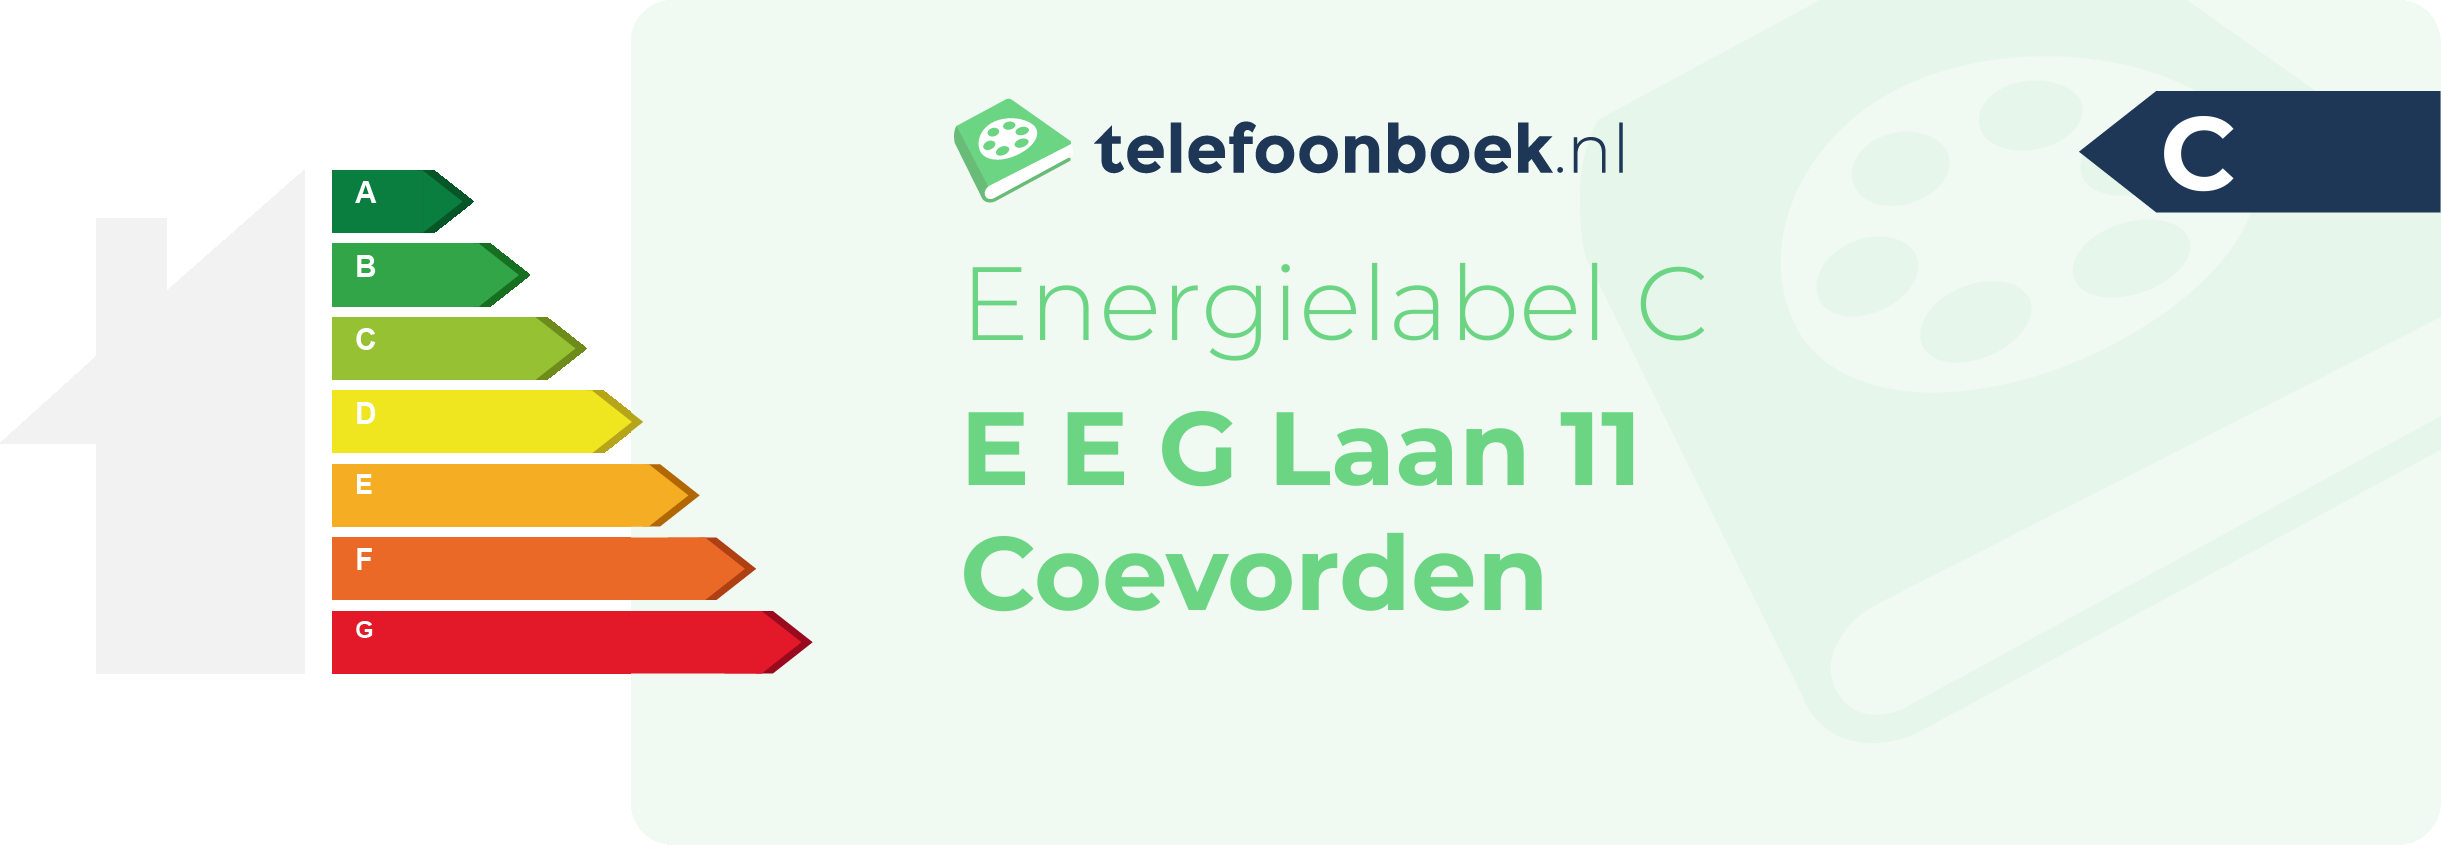 Energielabel E E G Laan 11 Coevorden